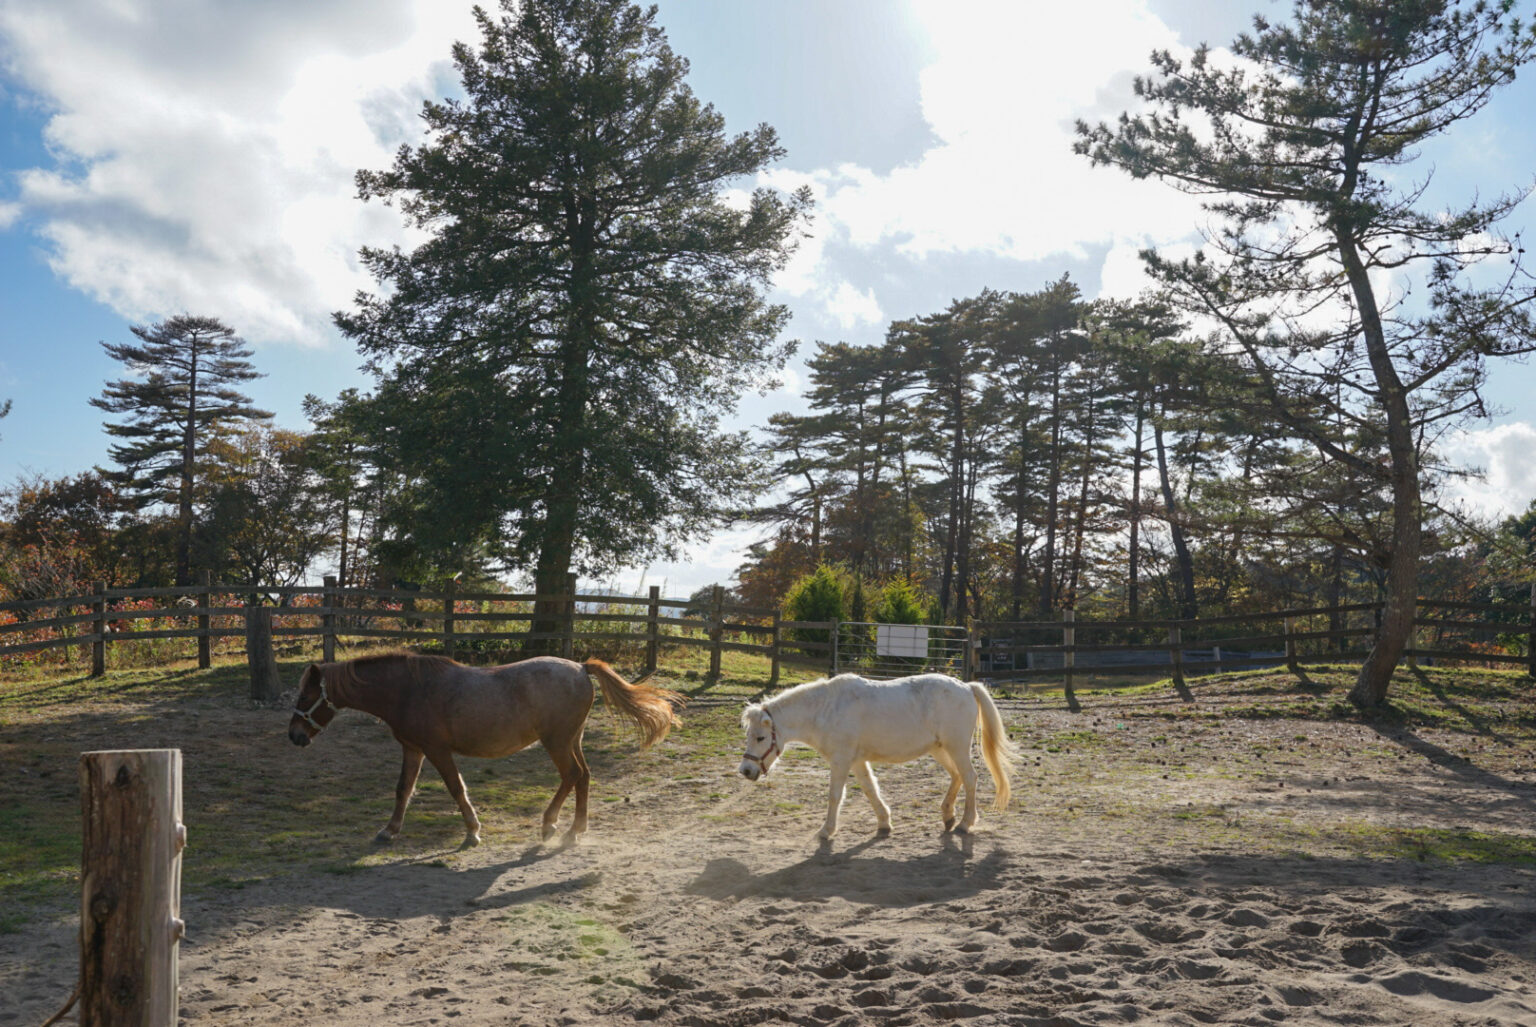 施設内には9頭の馬が暮らしている。「グラウンドワーク」という特別な飼育方法で育てられており、極めて穏やかで人懐っこい性格。